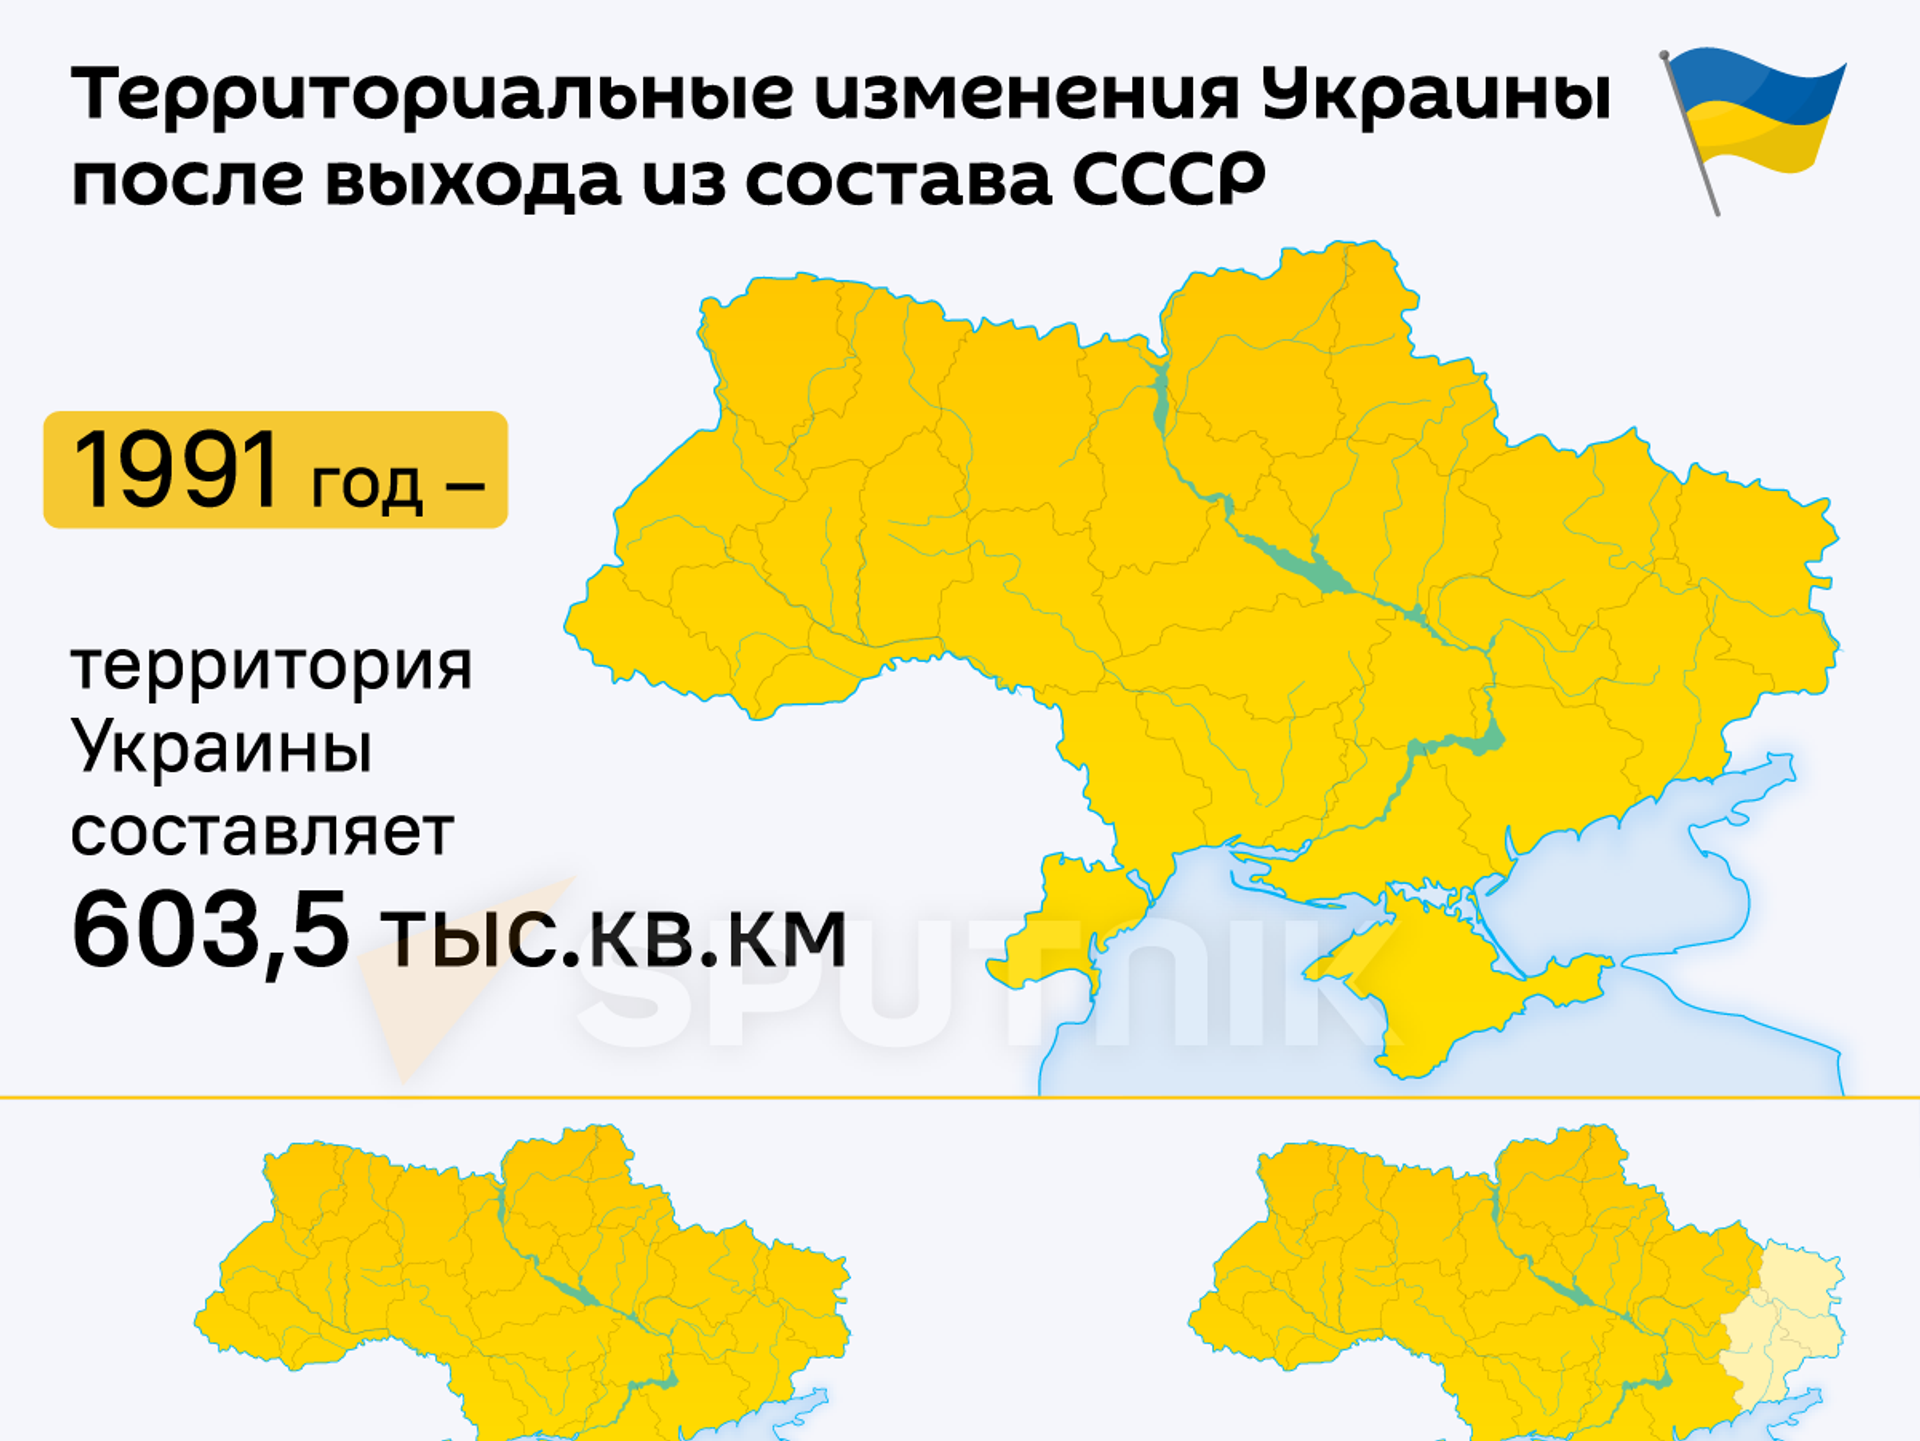 Какой была украина в 1991 году. Территрория уарпинв. Территория Укран. Территория Украины 2014 года. Территория Украины 1991 года.